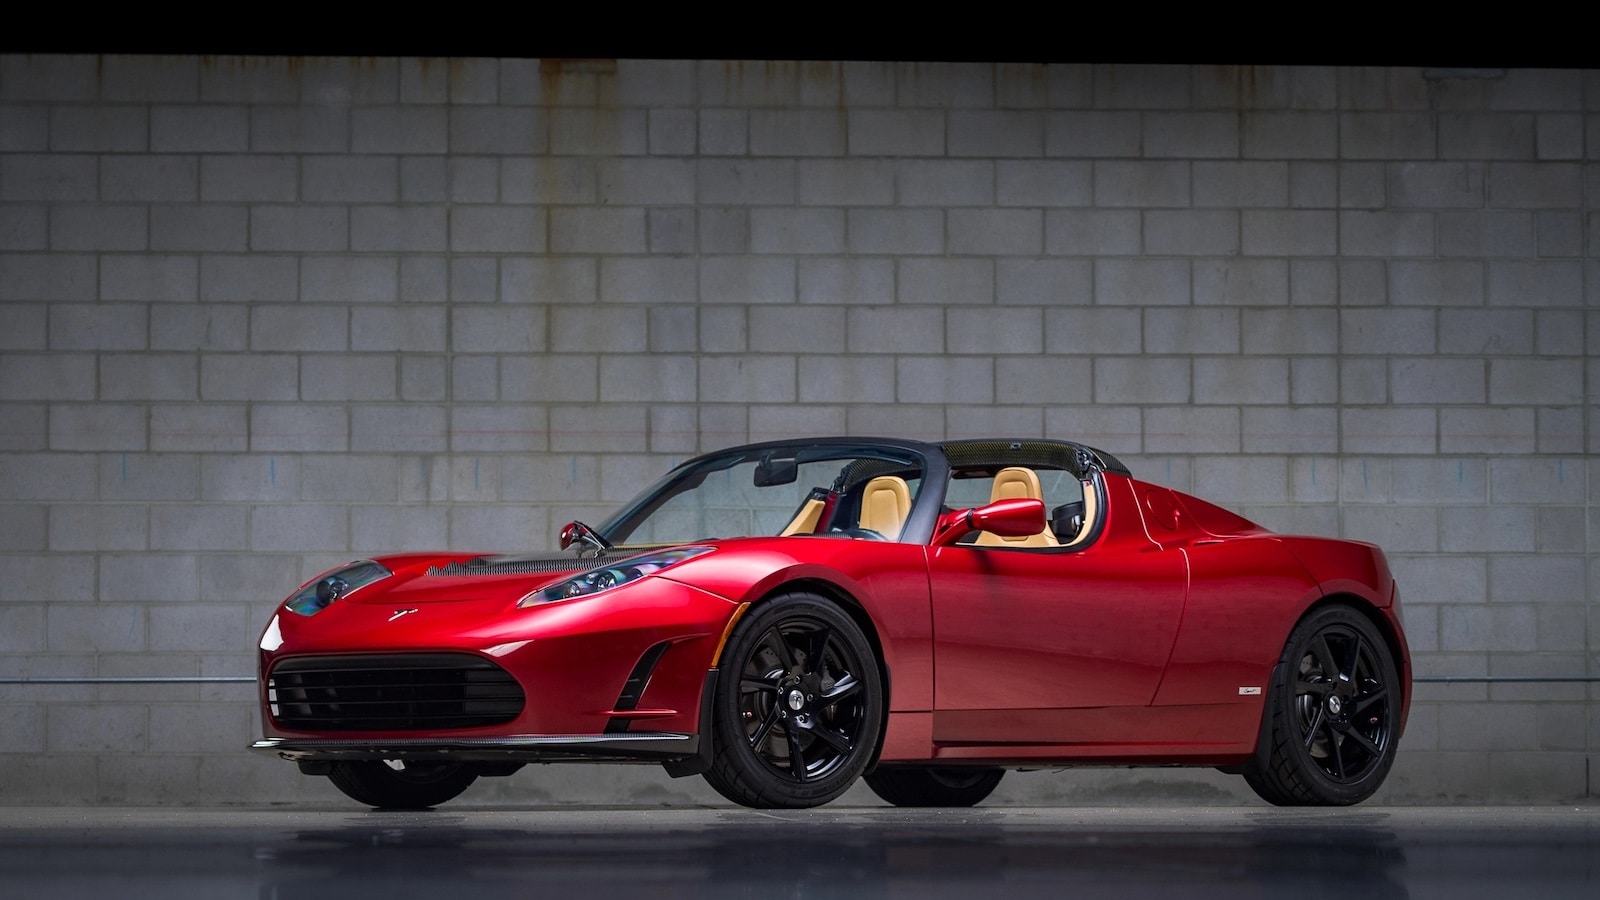 Combien seriez-vous prêt à mettre pour cette Tesla Roadster avec 13 000 km au compteur ?